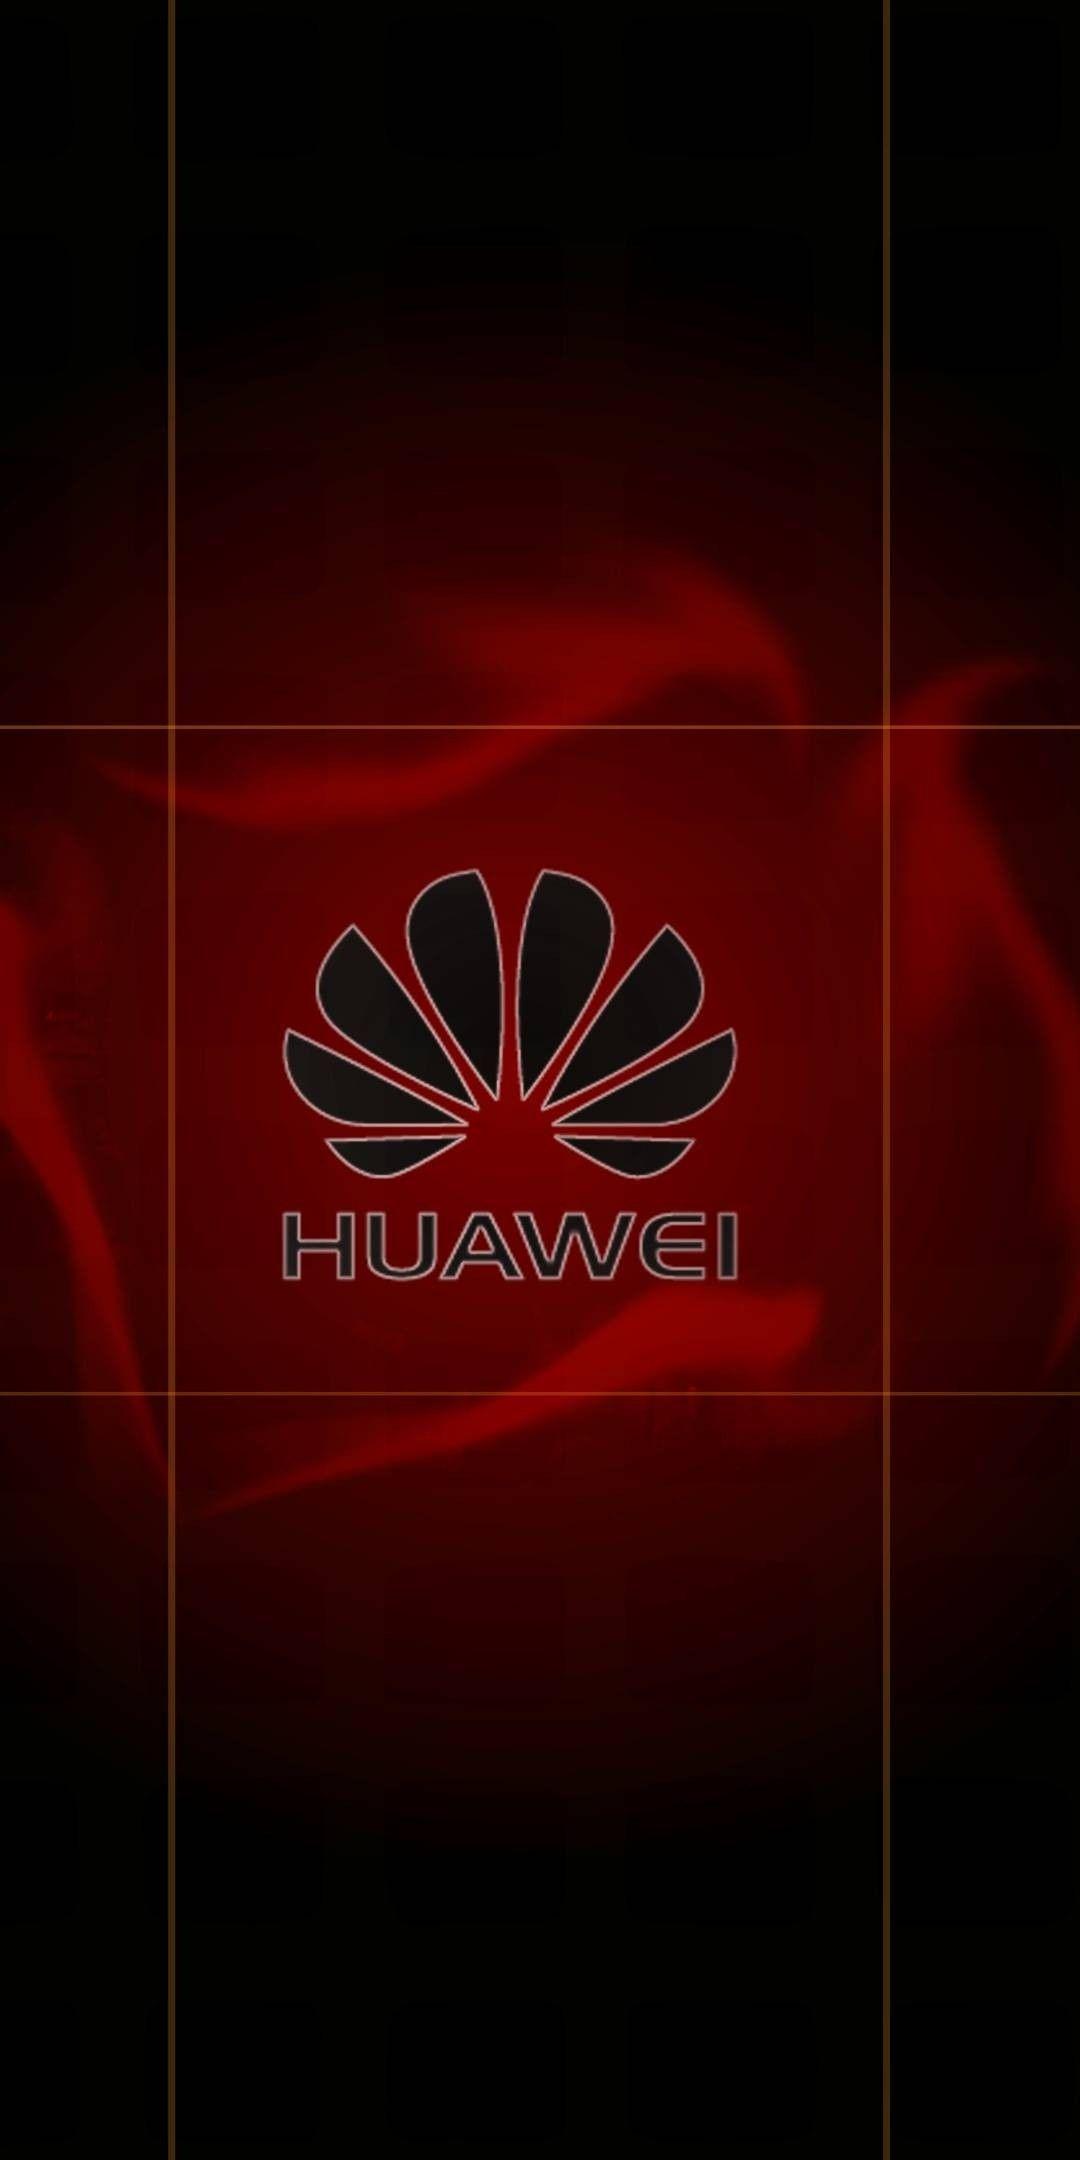 1080 x 2160 · jpeg - Pin by Angel Fabian Maurtua Silva on Huawei | Huawei wallpapers, Huawei ...